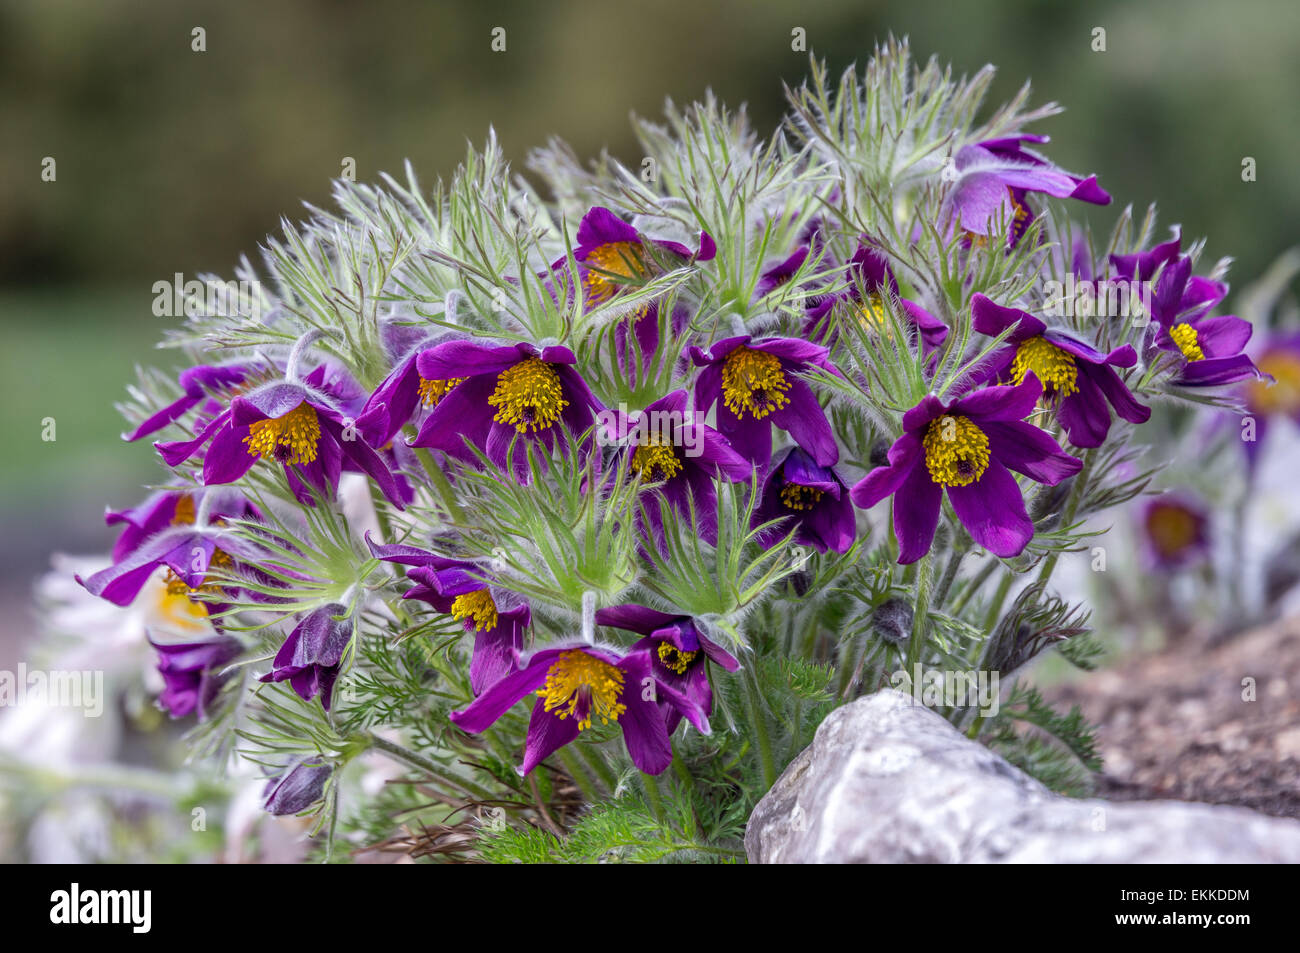 Pasque flower Pulsatilla rubra cluster en plena floración Foto de stock